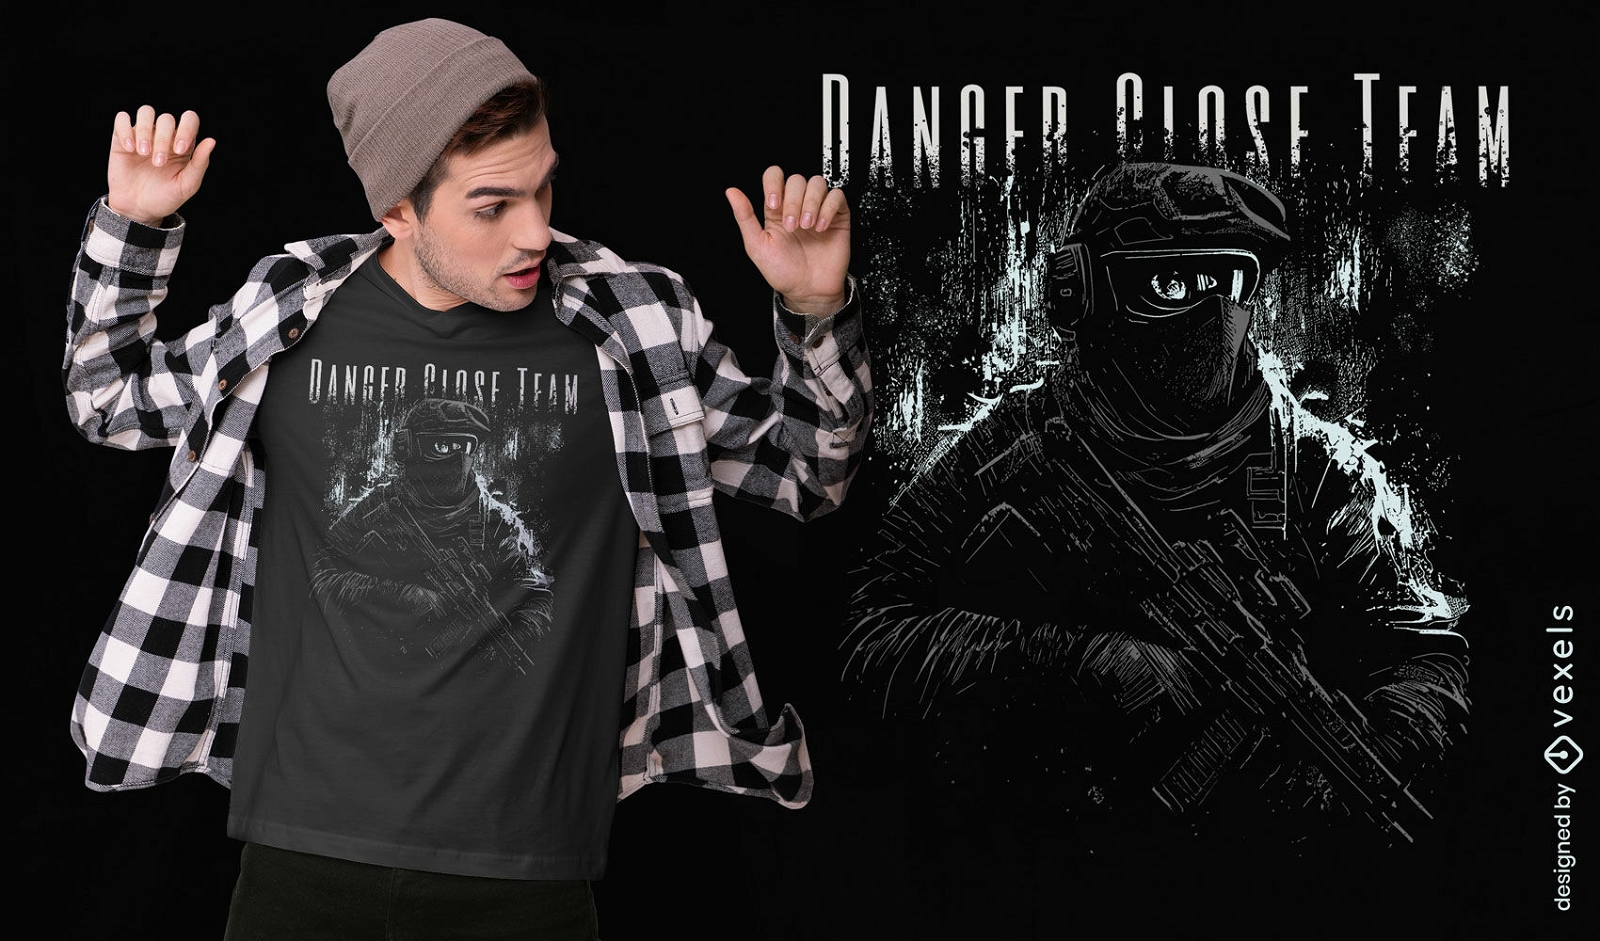 Tactical squad t-shirt design